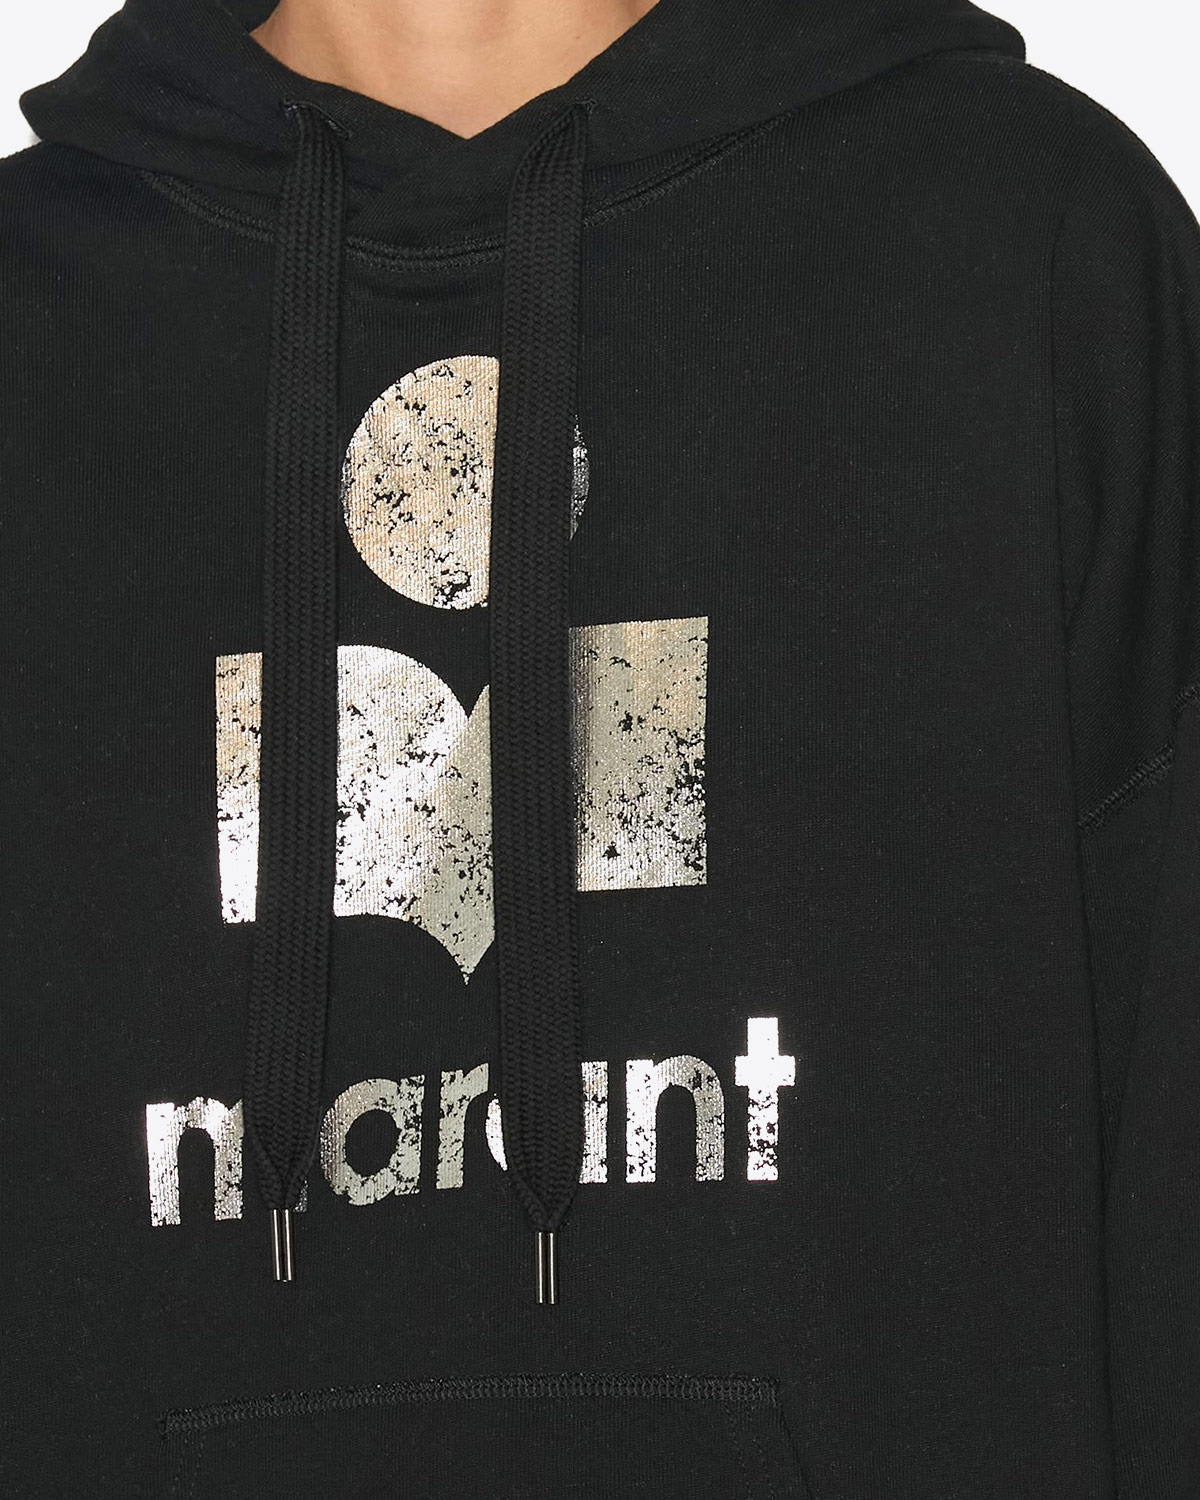 Sweat-shirt oversize à capuche noir logo argent Mansel Isabel Marant Etoile. Détail du logo.